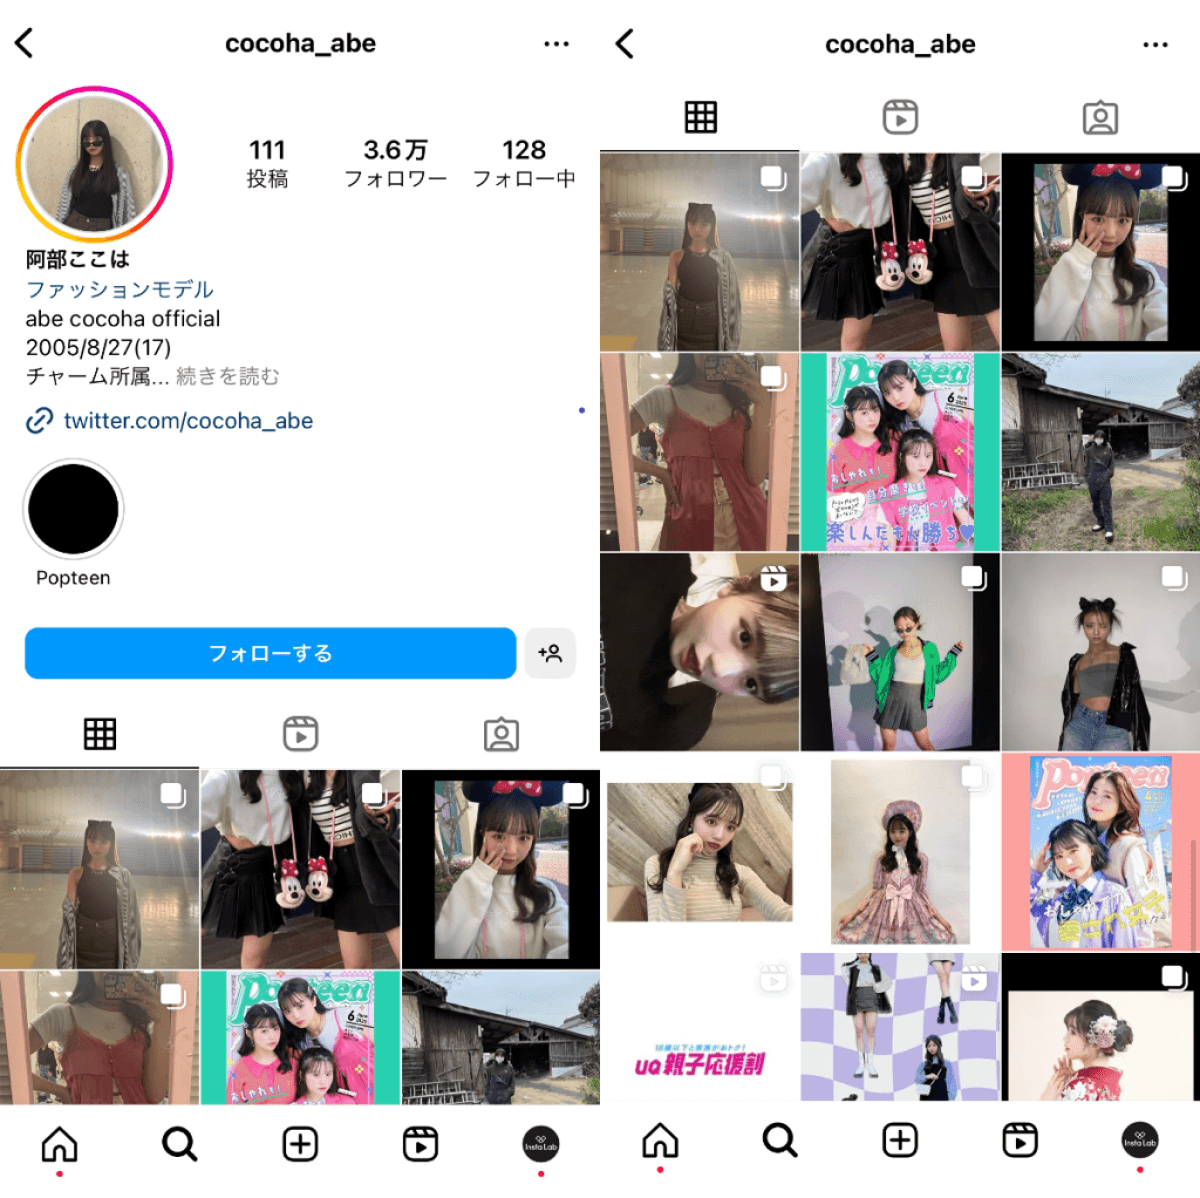 instagram-account-cocoha-abe